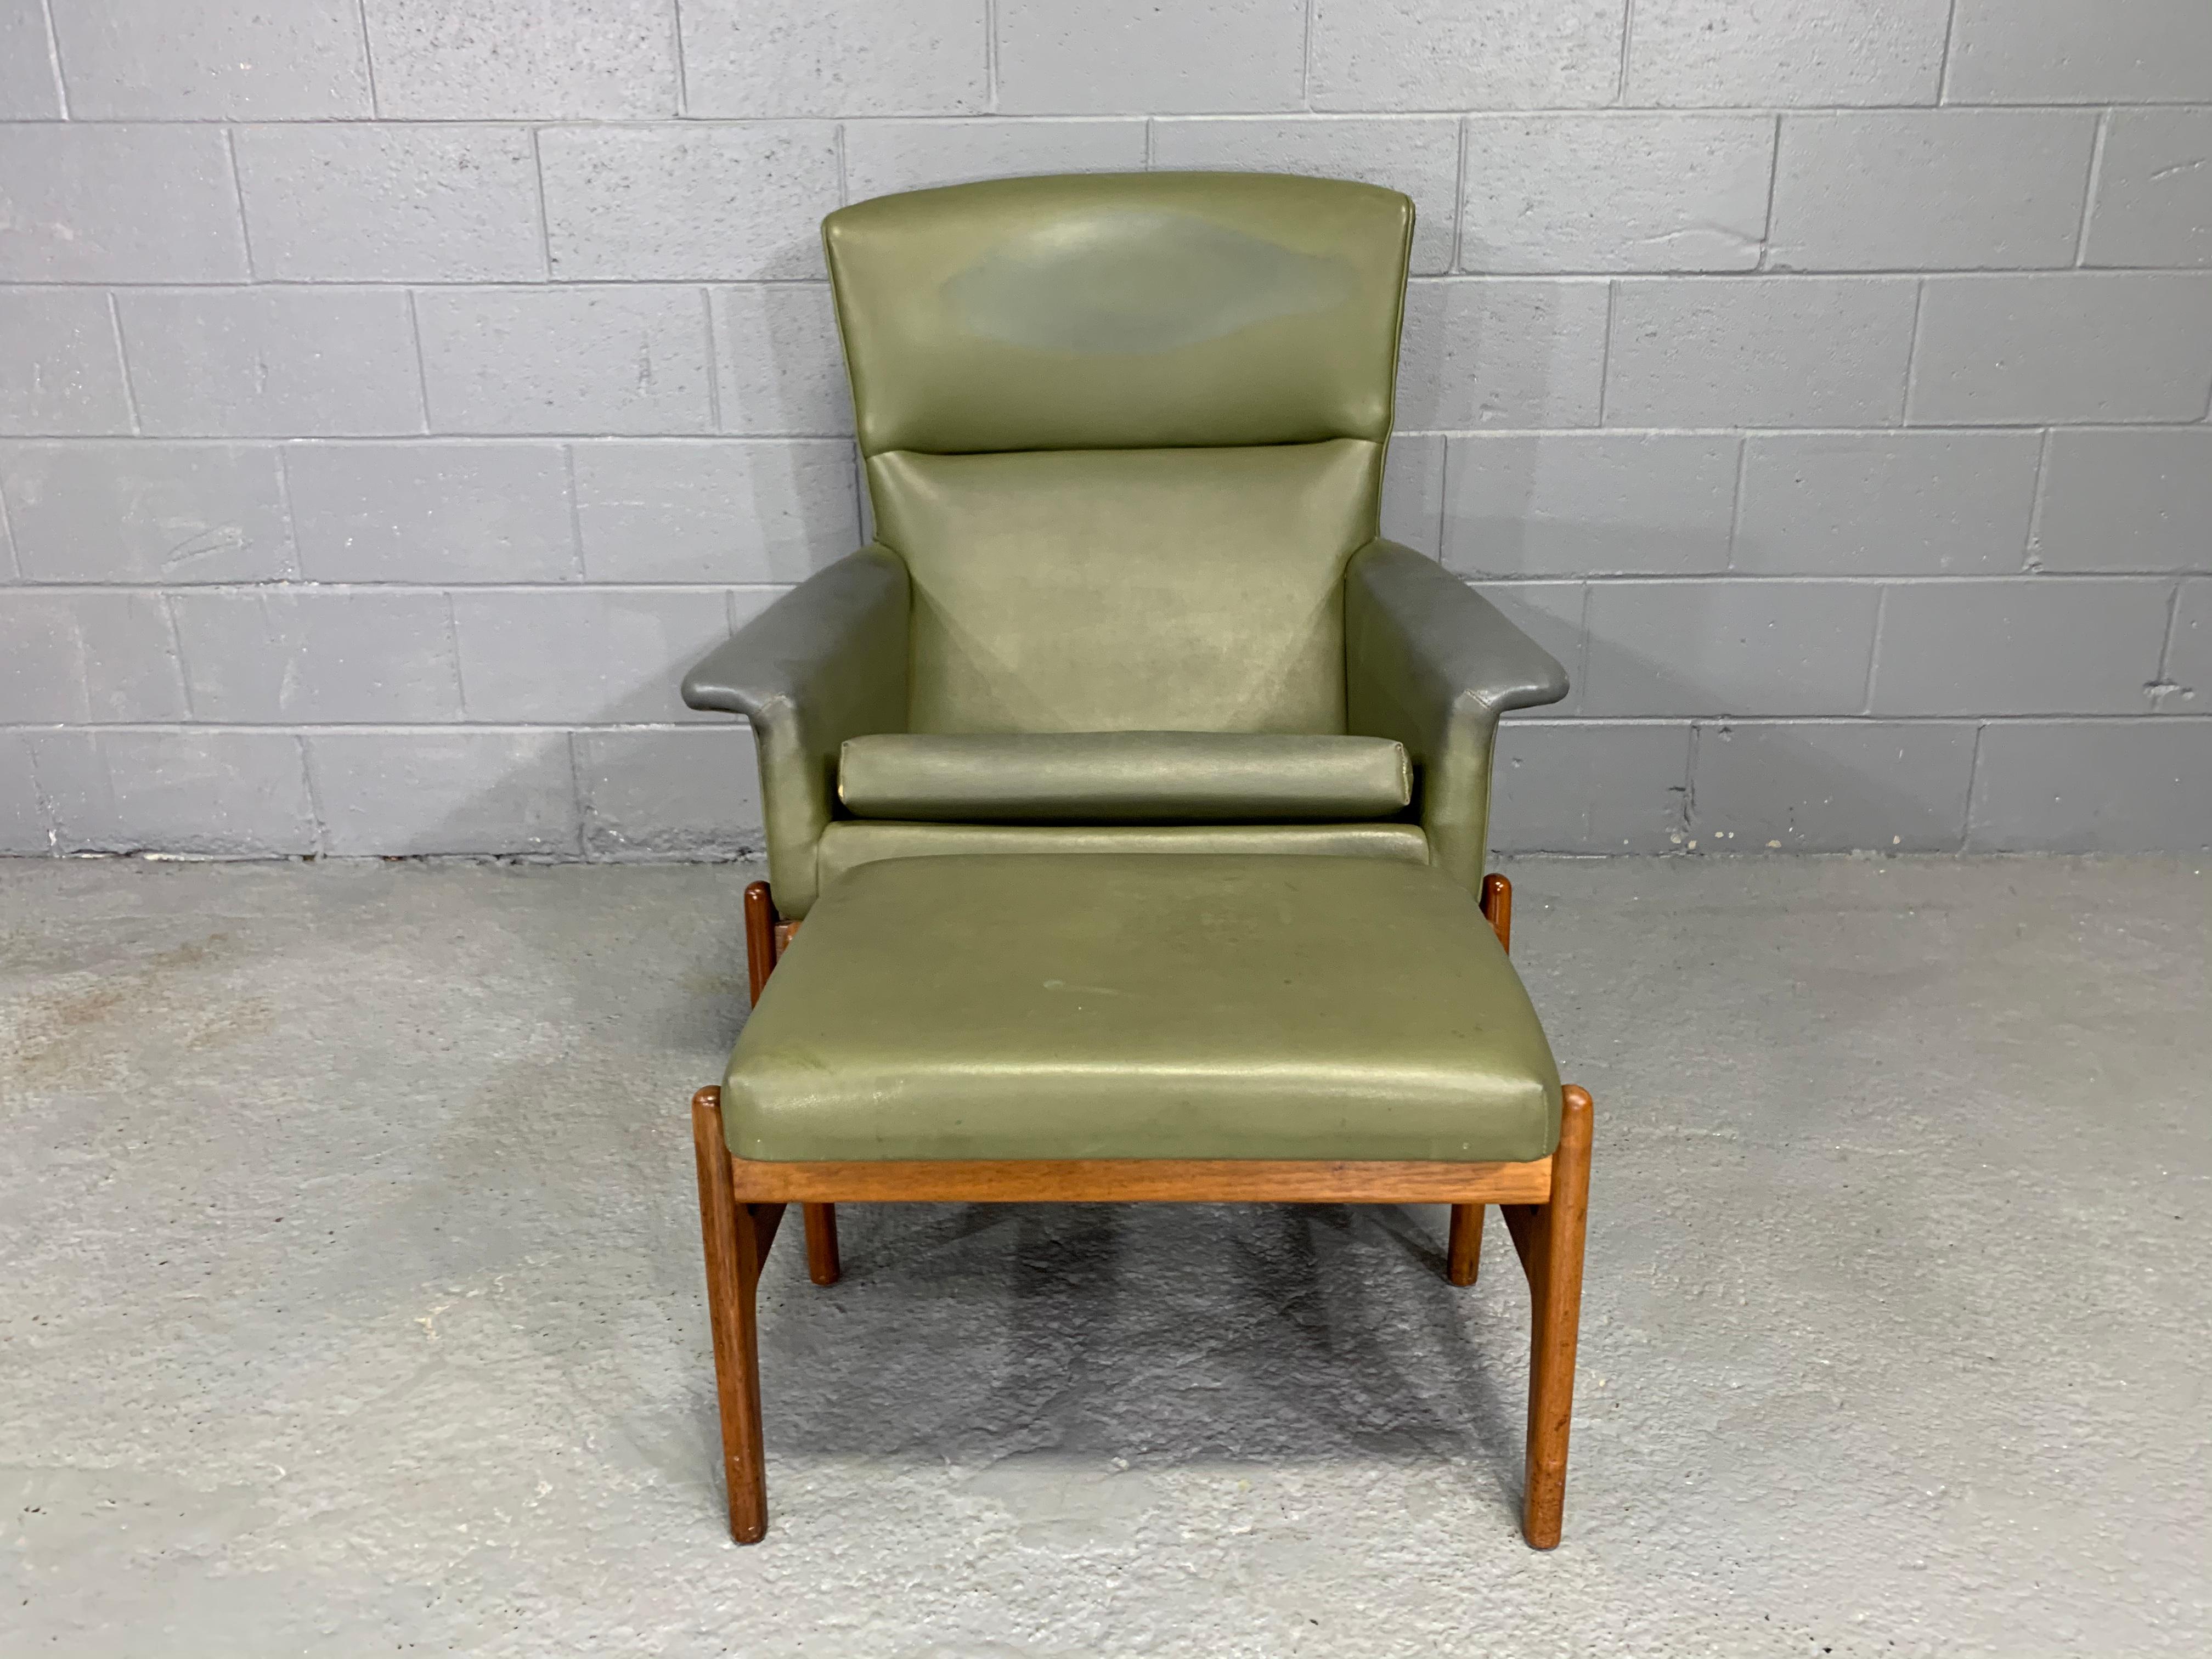 Ce fauteuil moderne du milieu du siècle par Folke Olsson est recouvert de faux cuir d'origine et a été fabriqué par Dux of Sweden dans les années 1960.

Le design de la chaise est extrêmement élégant, bien proportionné  un fauteuil confortable qui